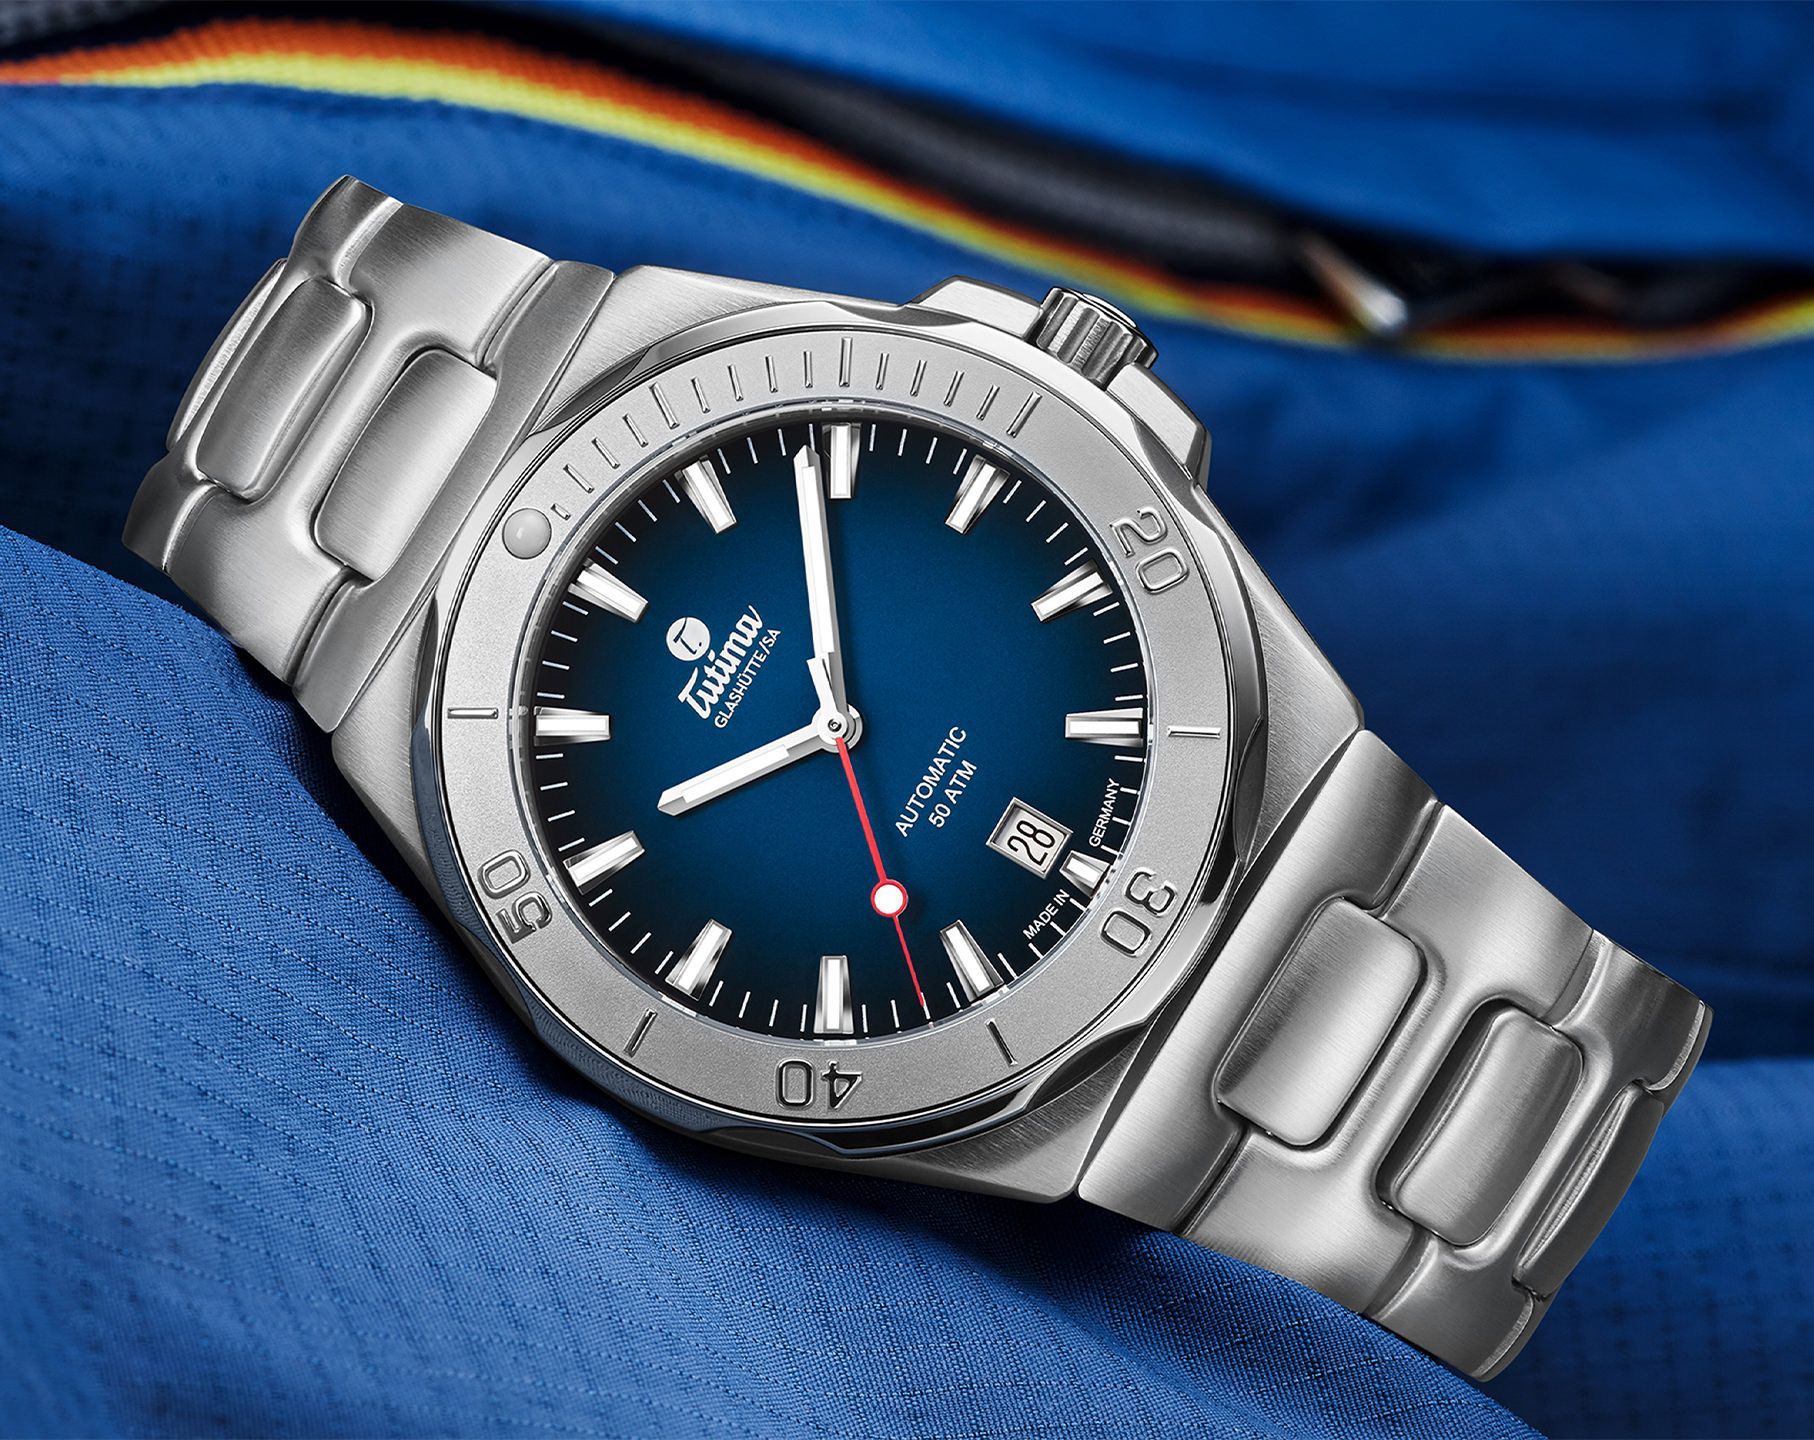 Tutima Glashütte Seven Seas S 40 mm Watch in Blue Dial For Men - 2